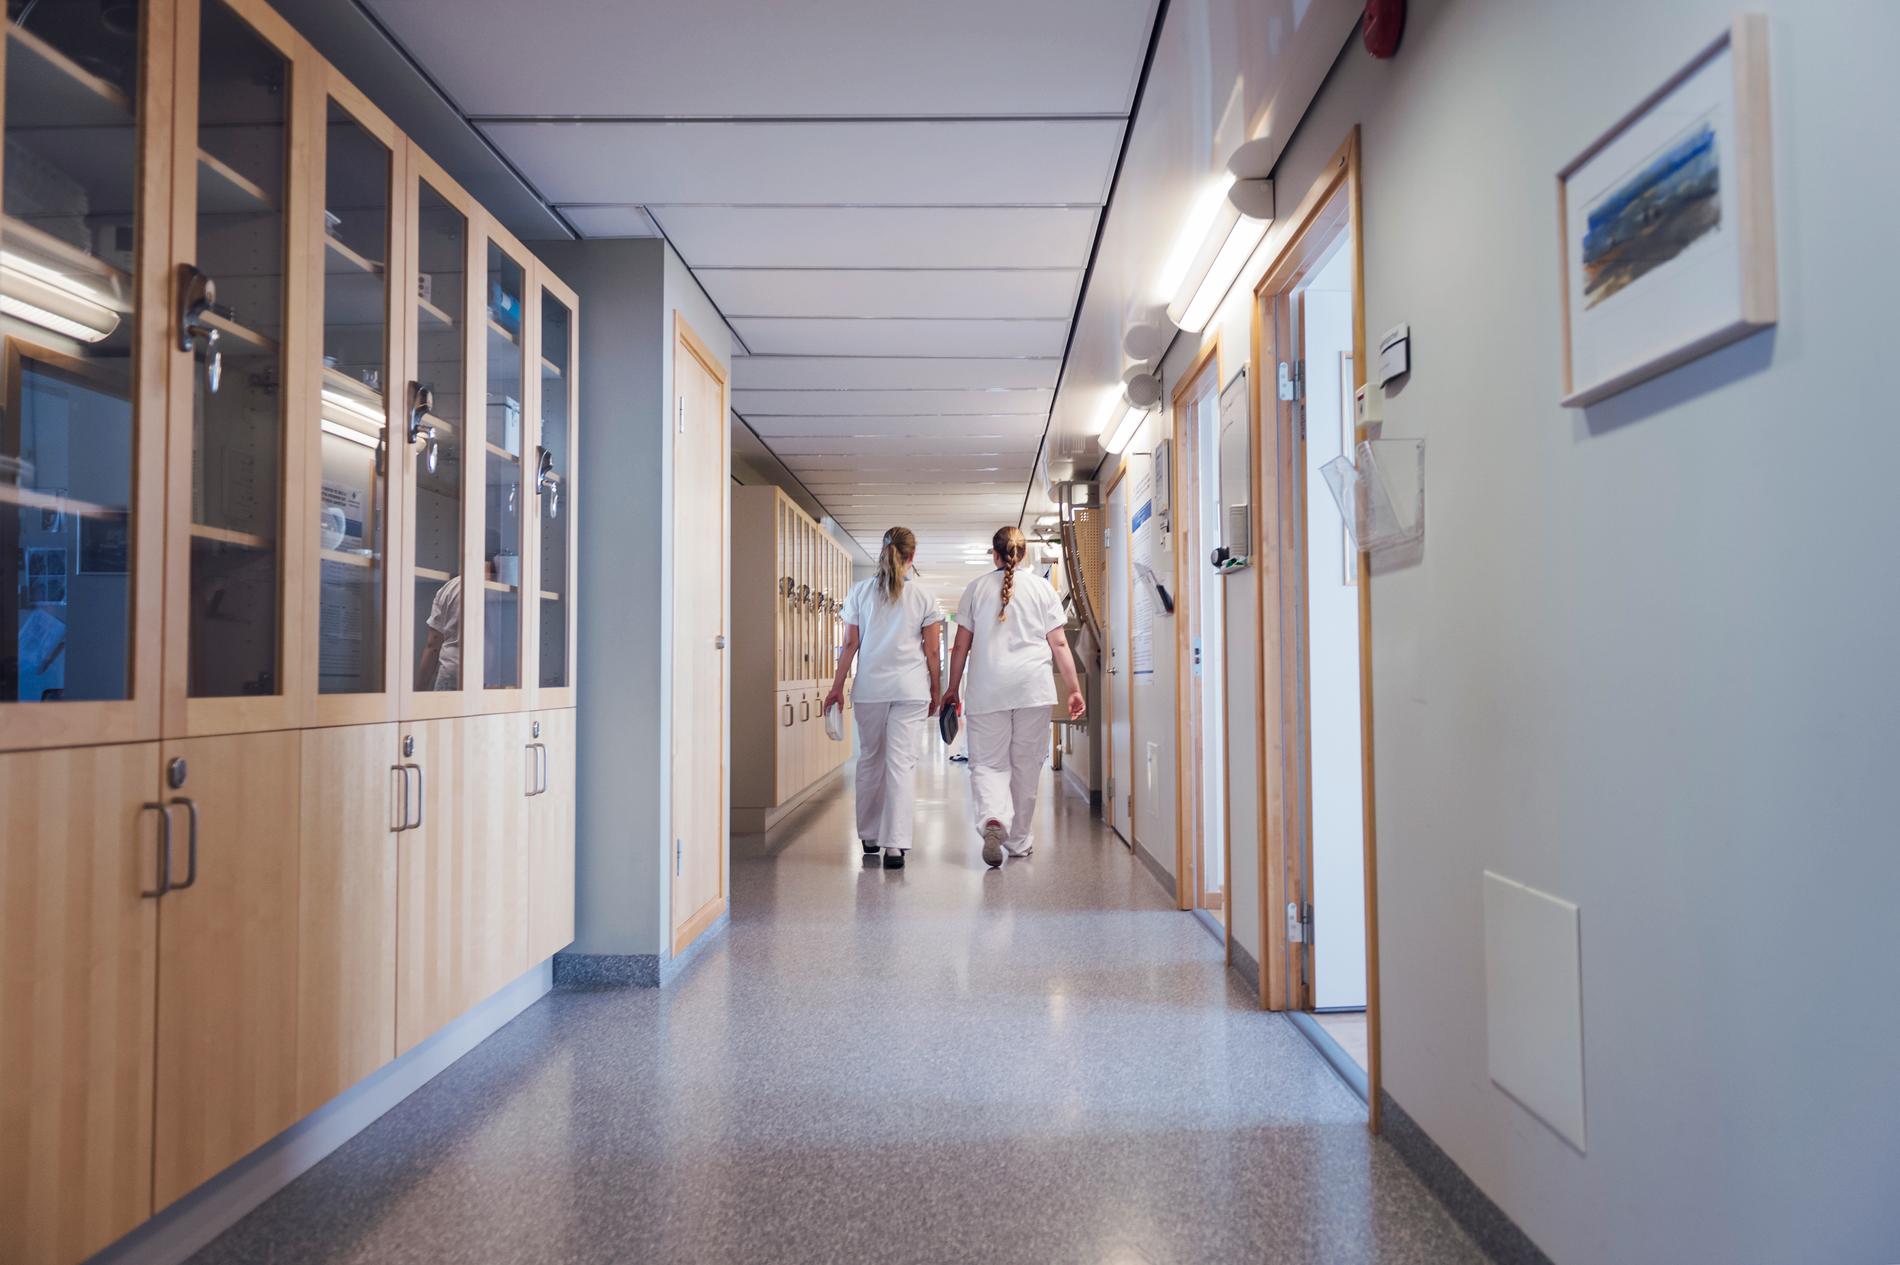 Personal i en korridor på Akademiska sjukhuset i Uppsala.